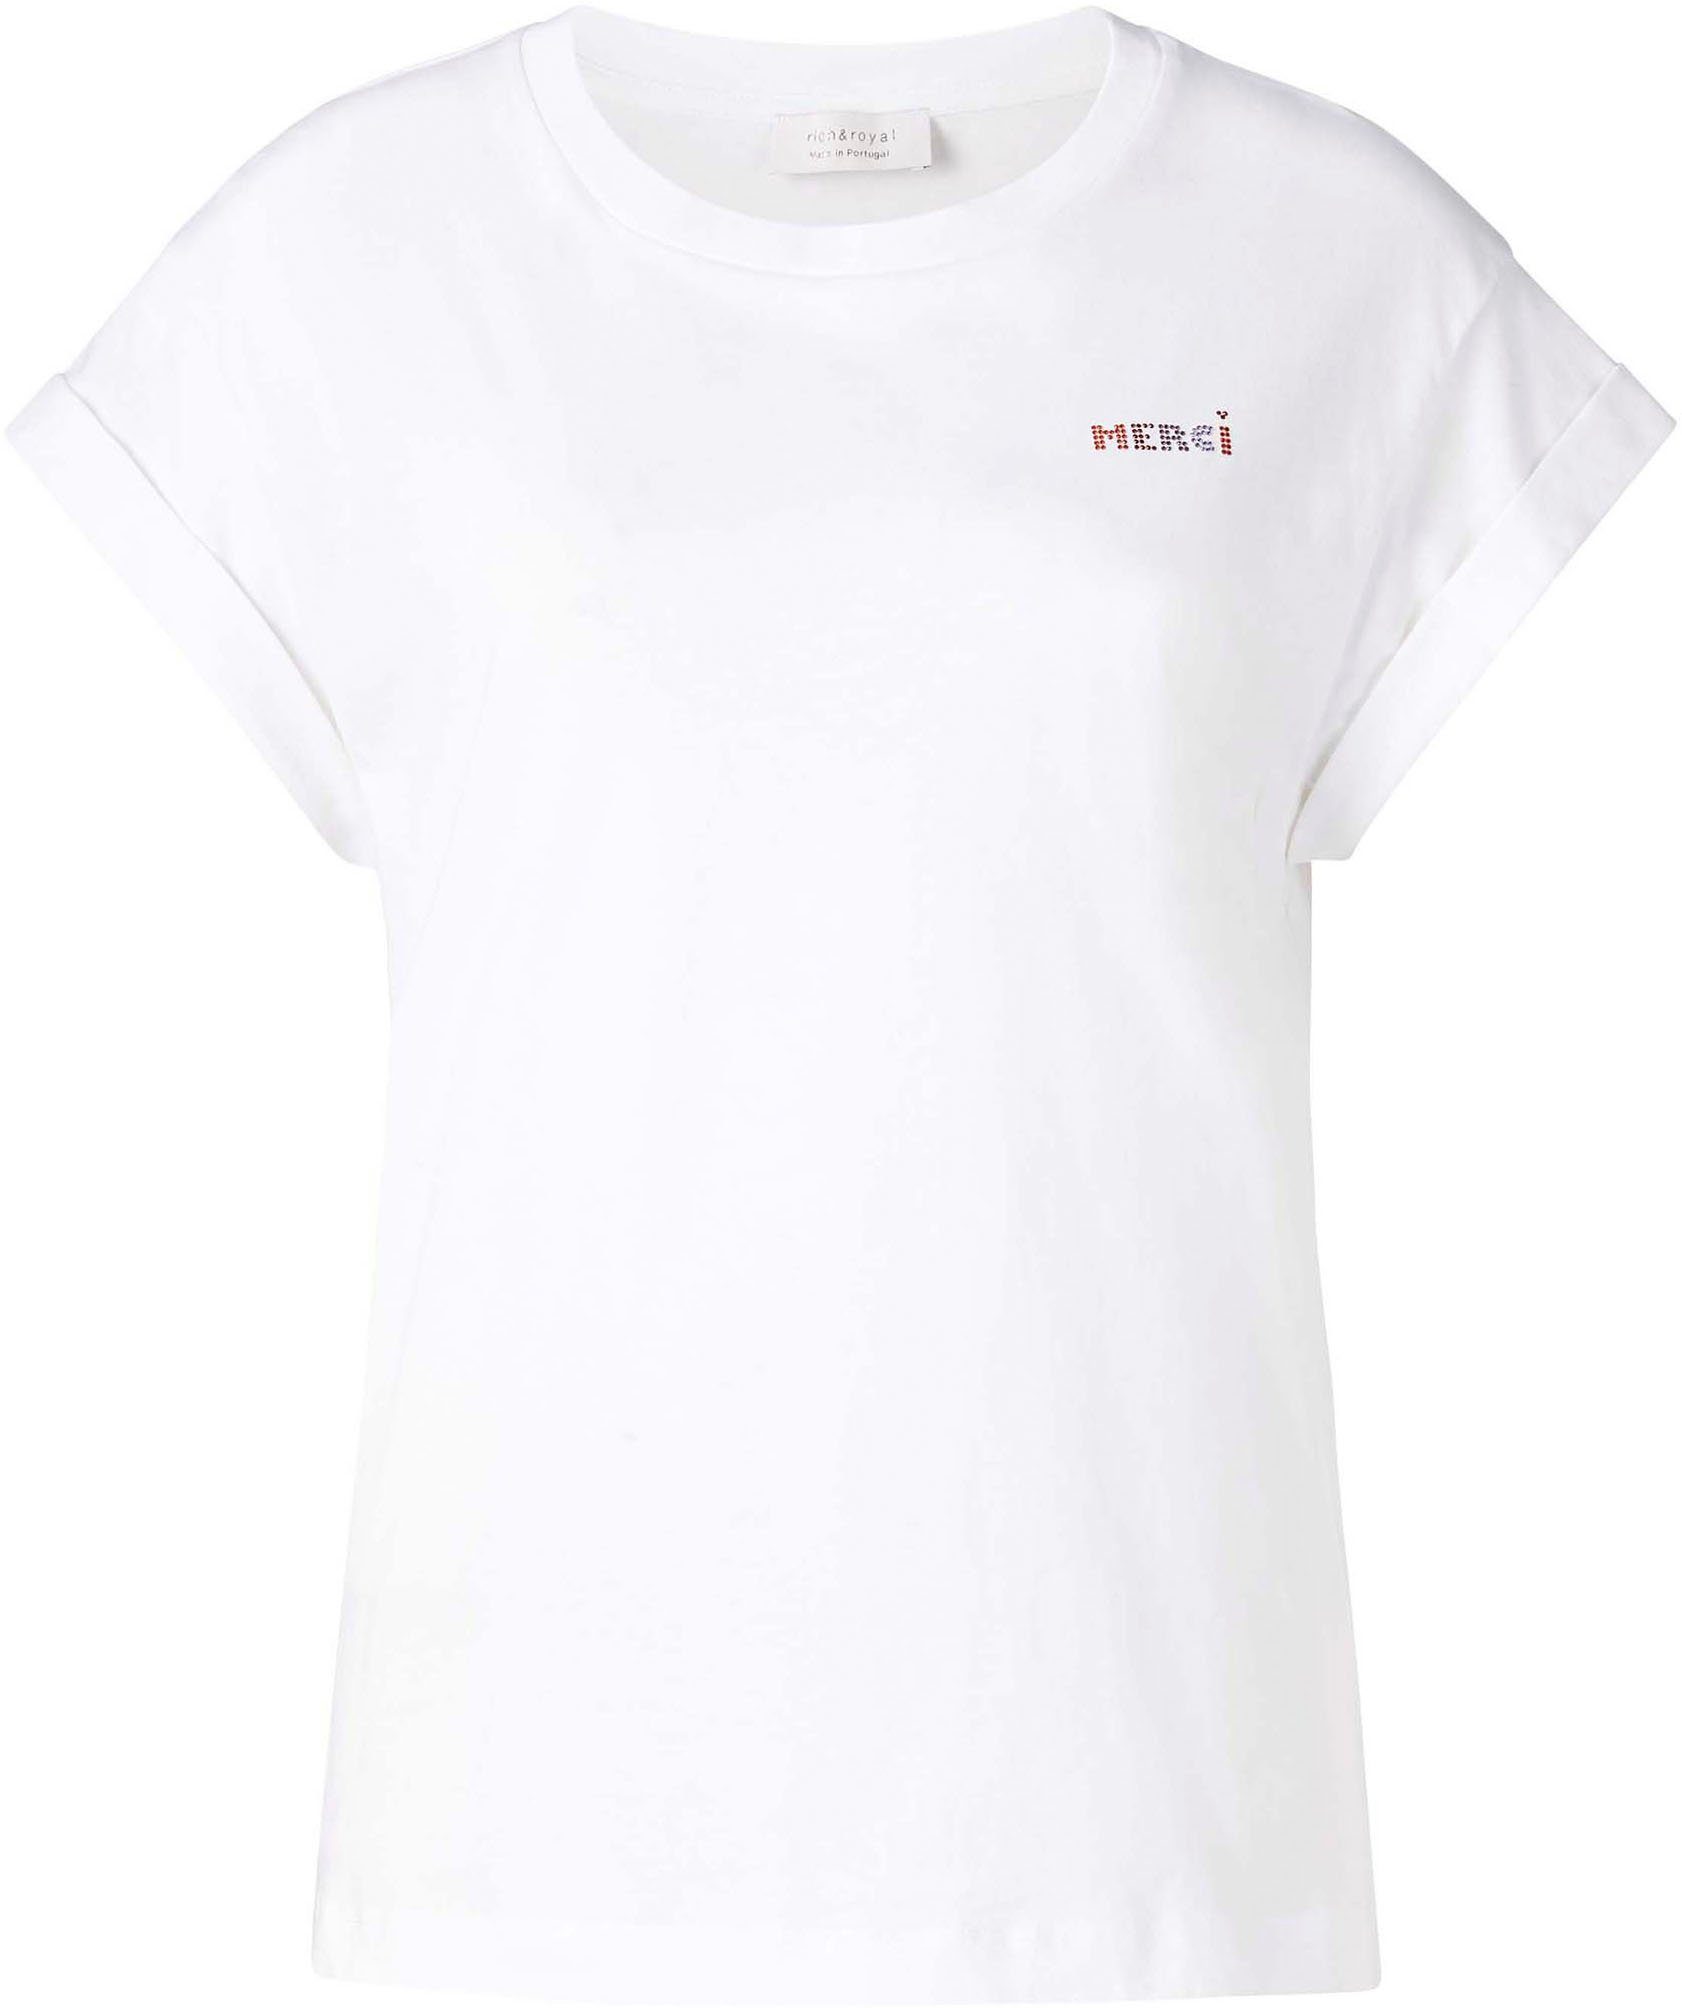 & Brusthöhe original weiß mit Glitzer-Print T-Shirt Royal Rich in